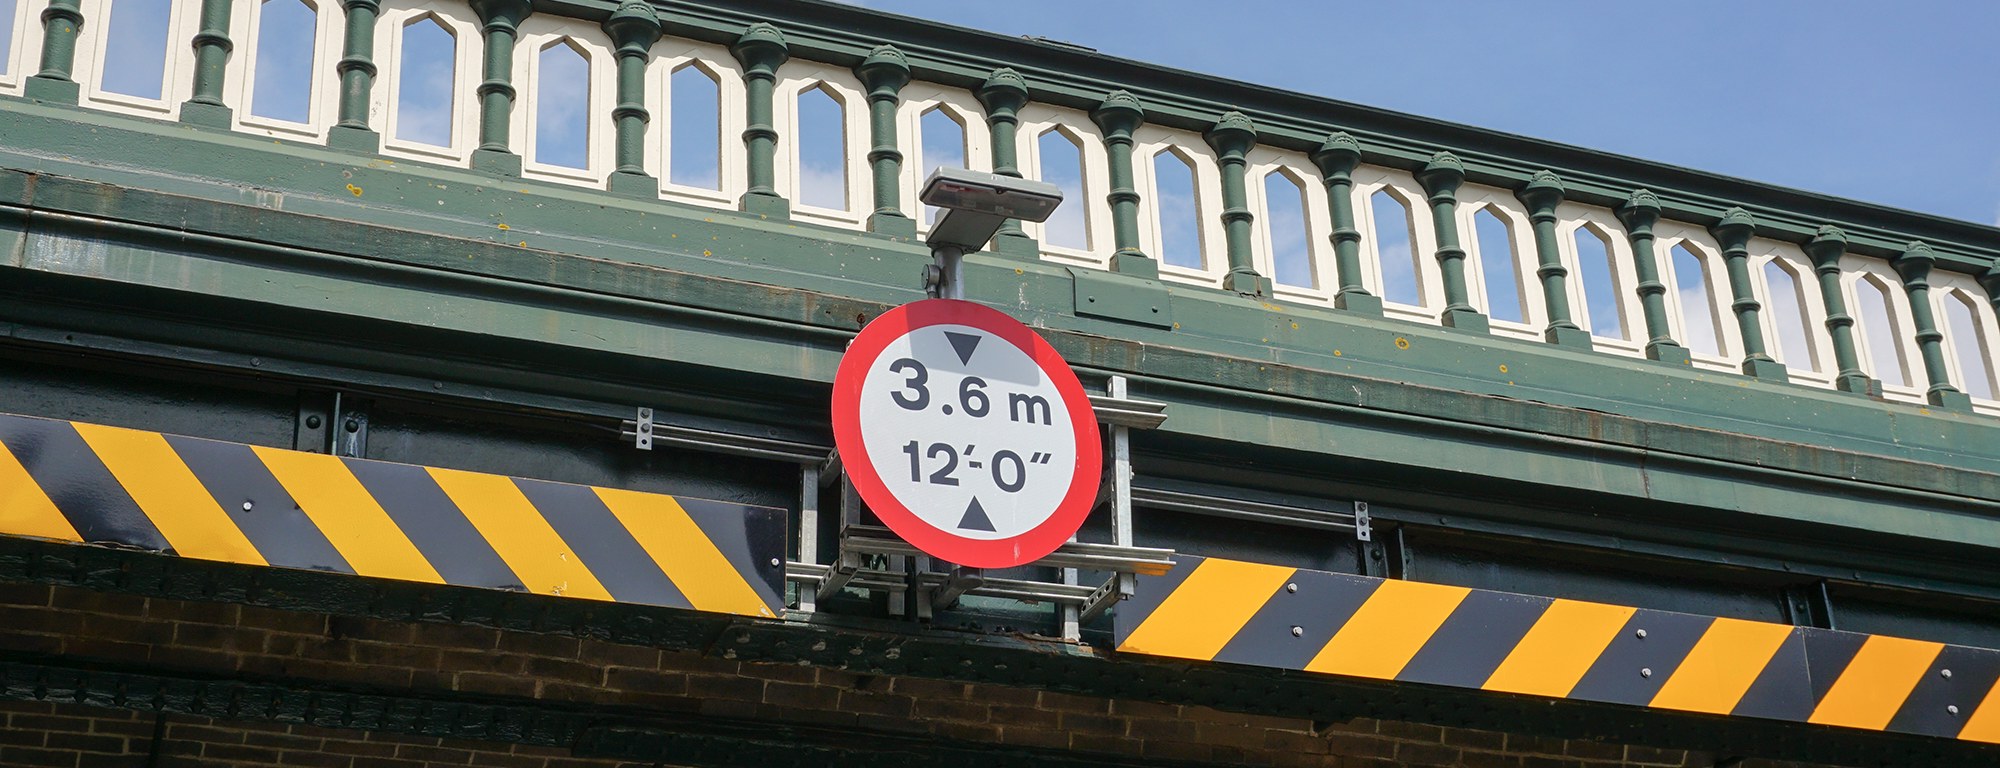 low bridge banner